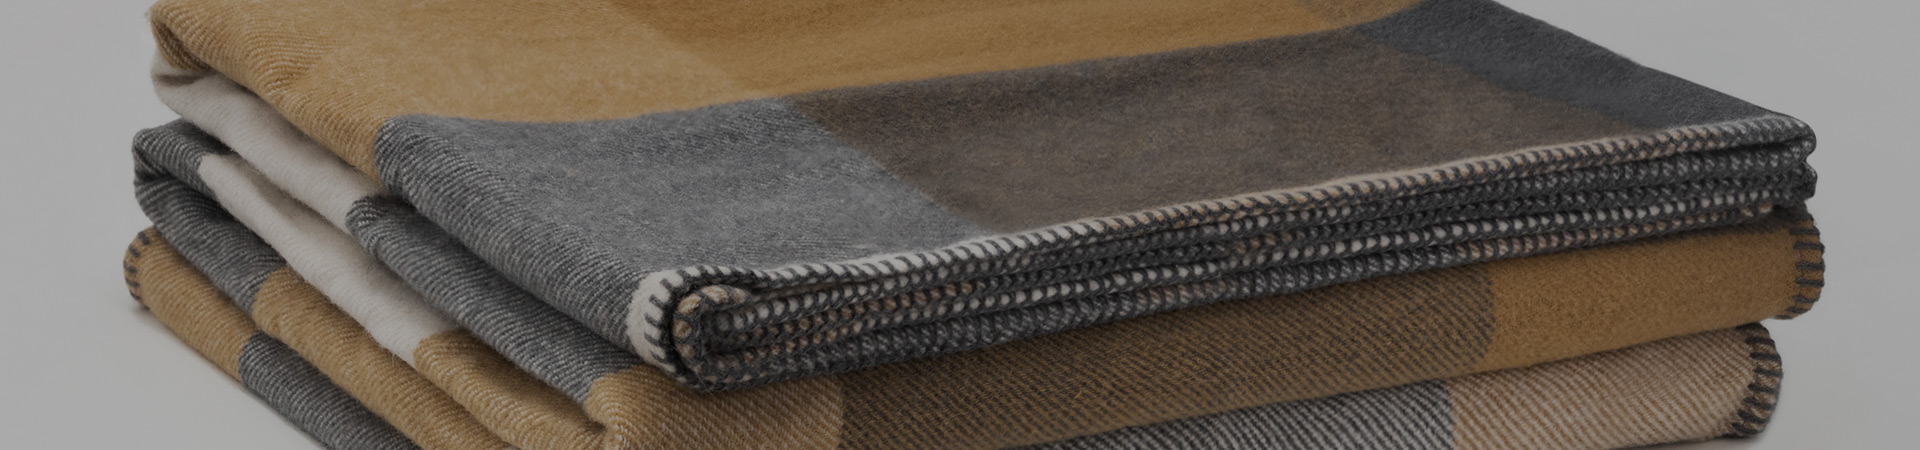 手工真丝地毯与机织毛毯的选购区别和保养方法